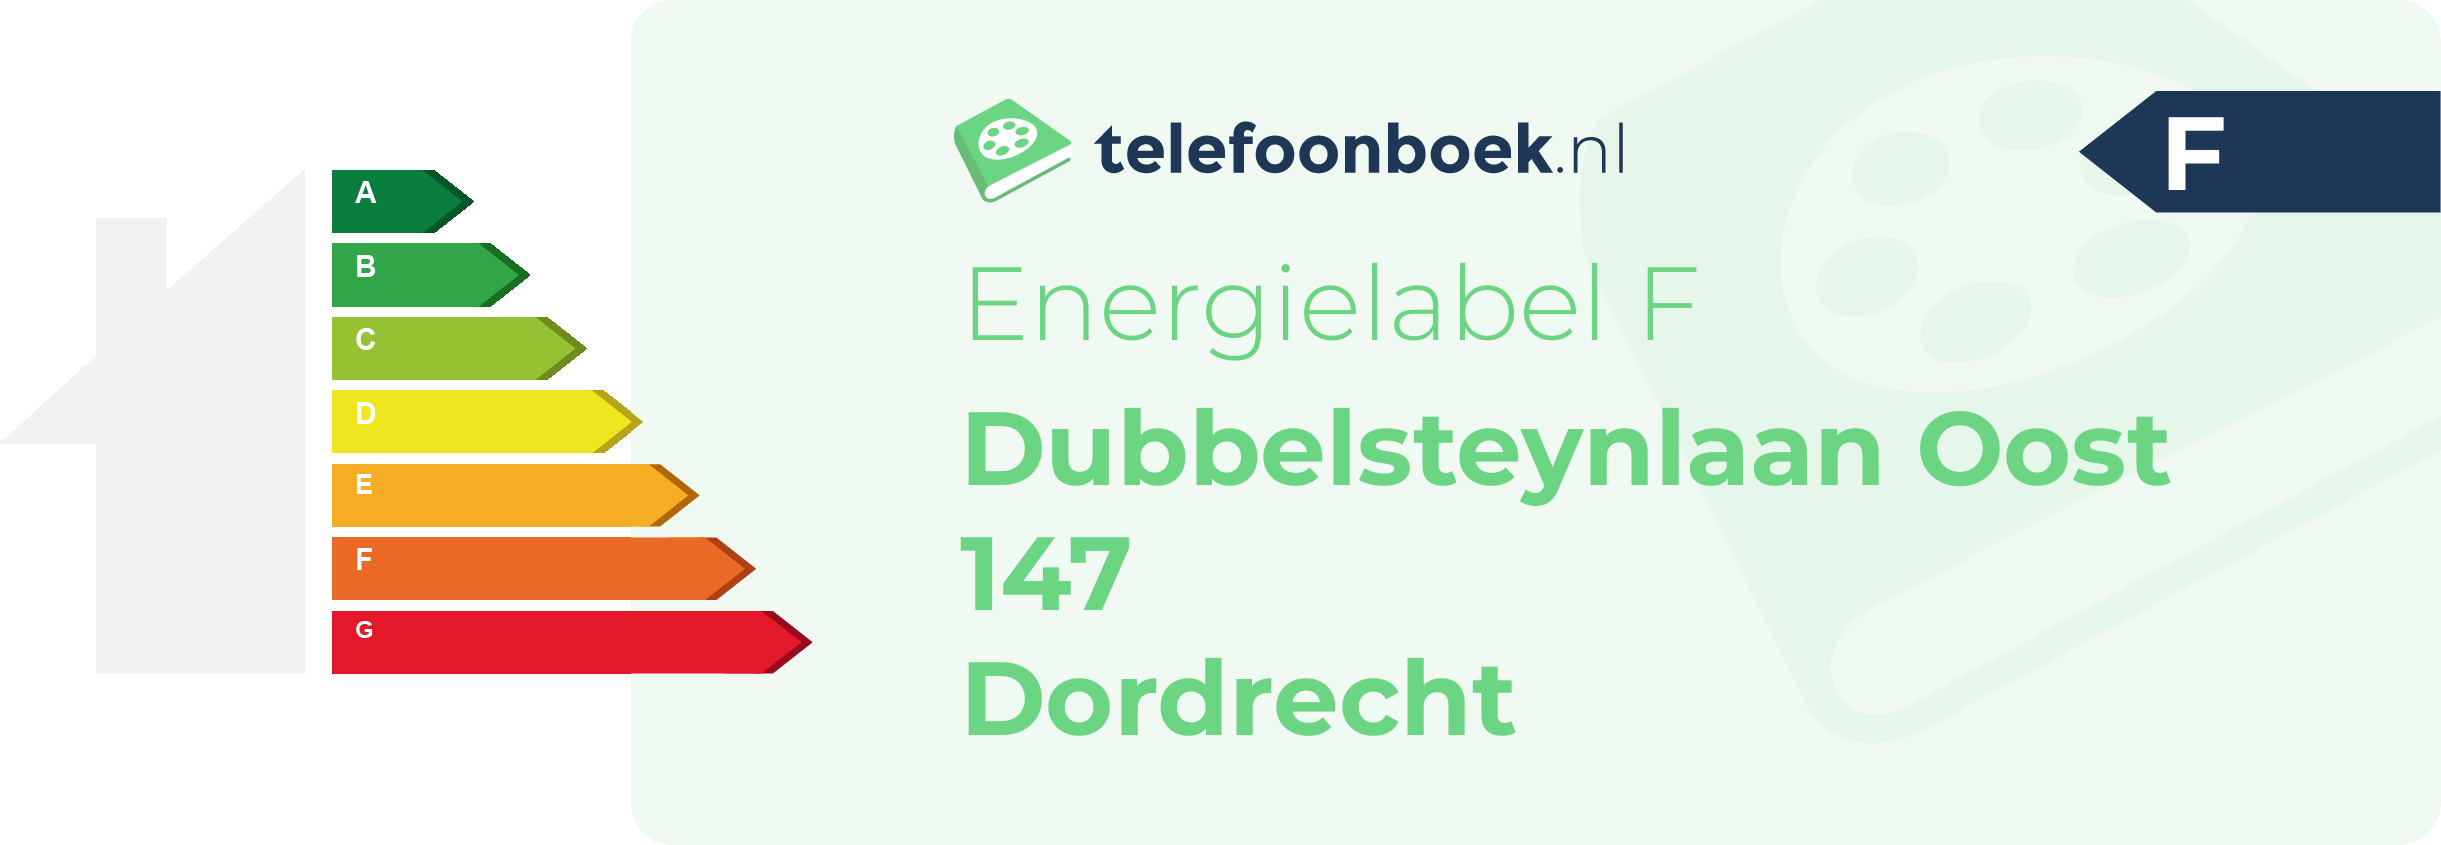 Energielabel Dubbelsteynlaan Oost 147 Dordrecht